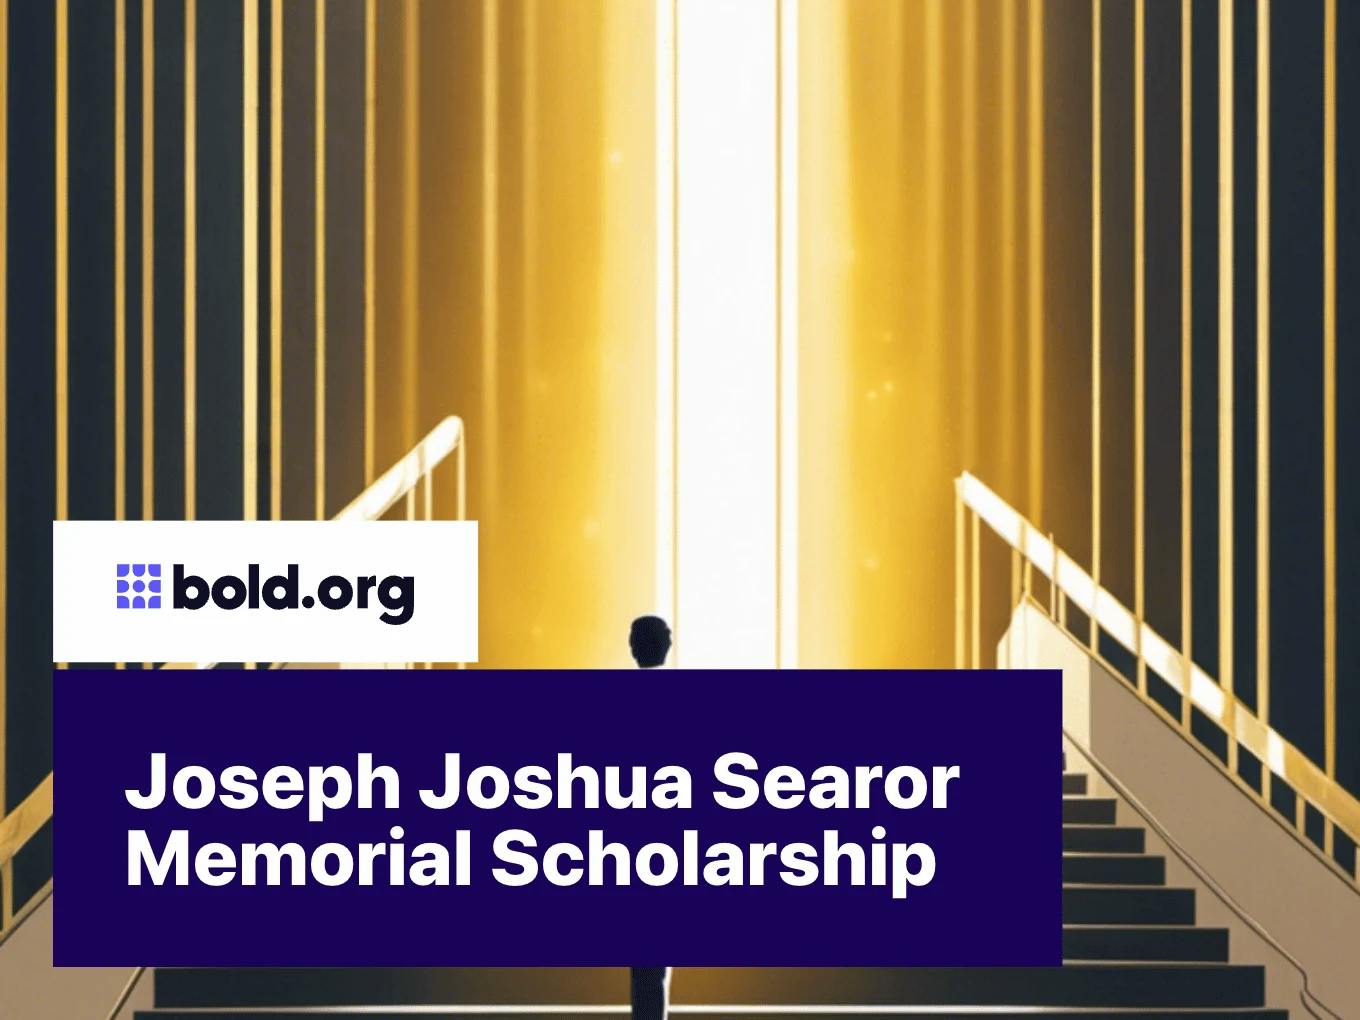 Joseph Joshua Searor Memorial Scholarship